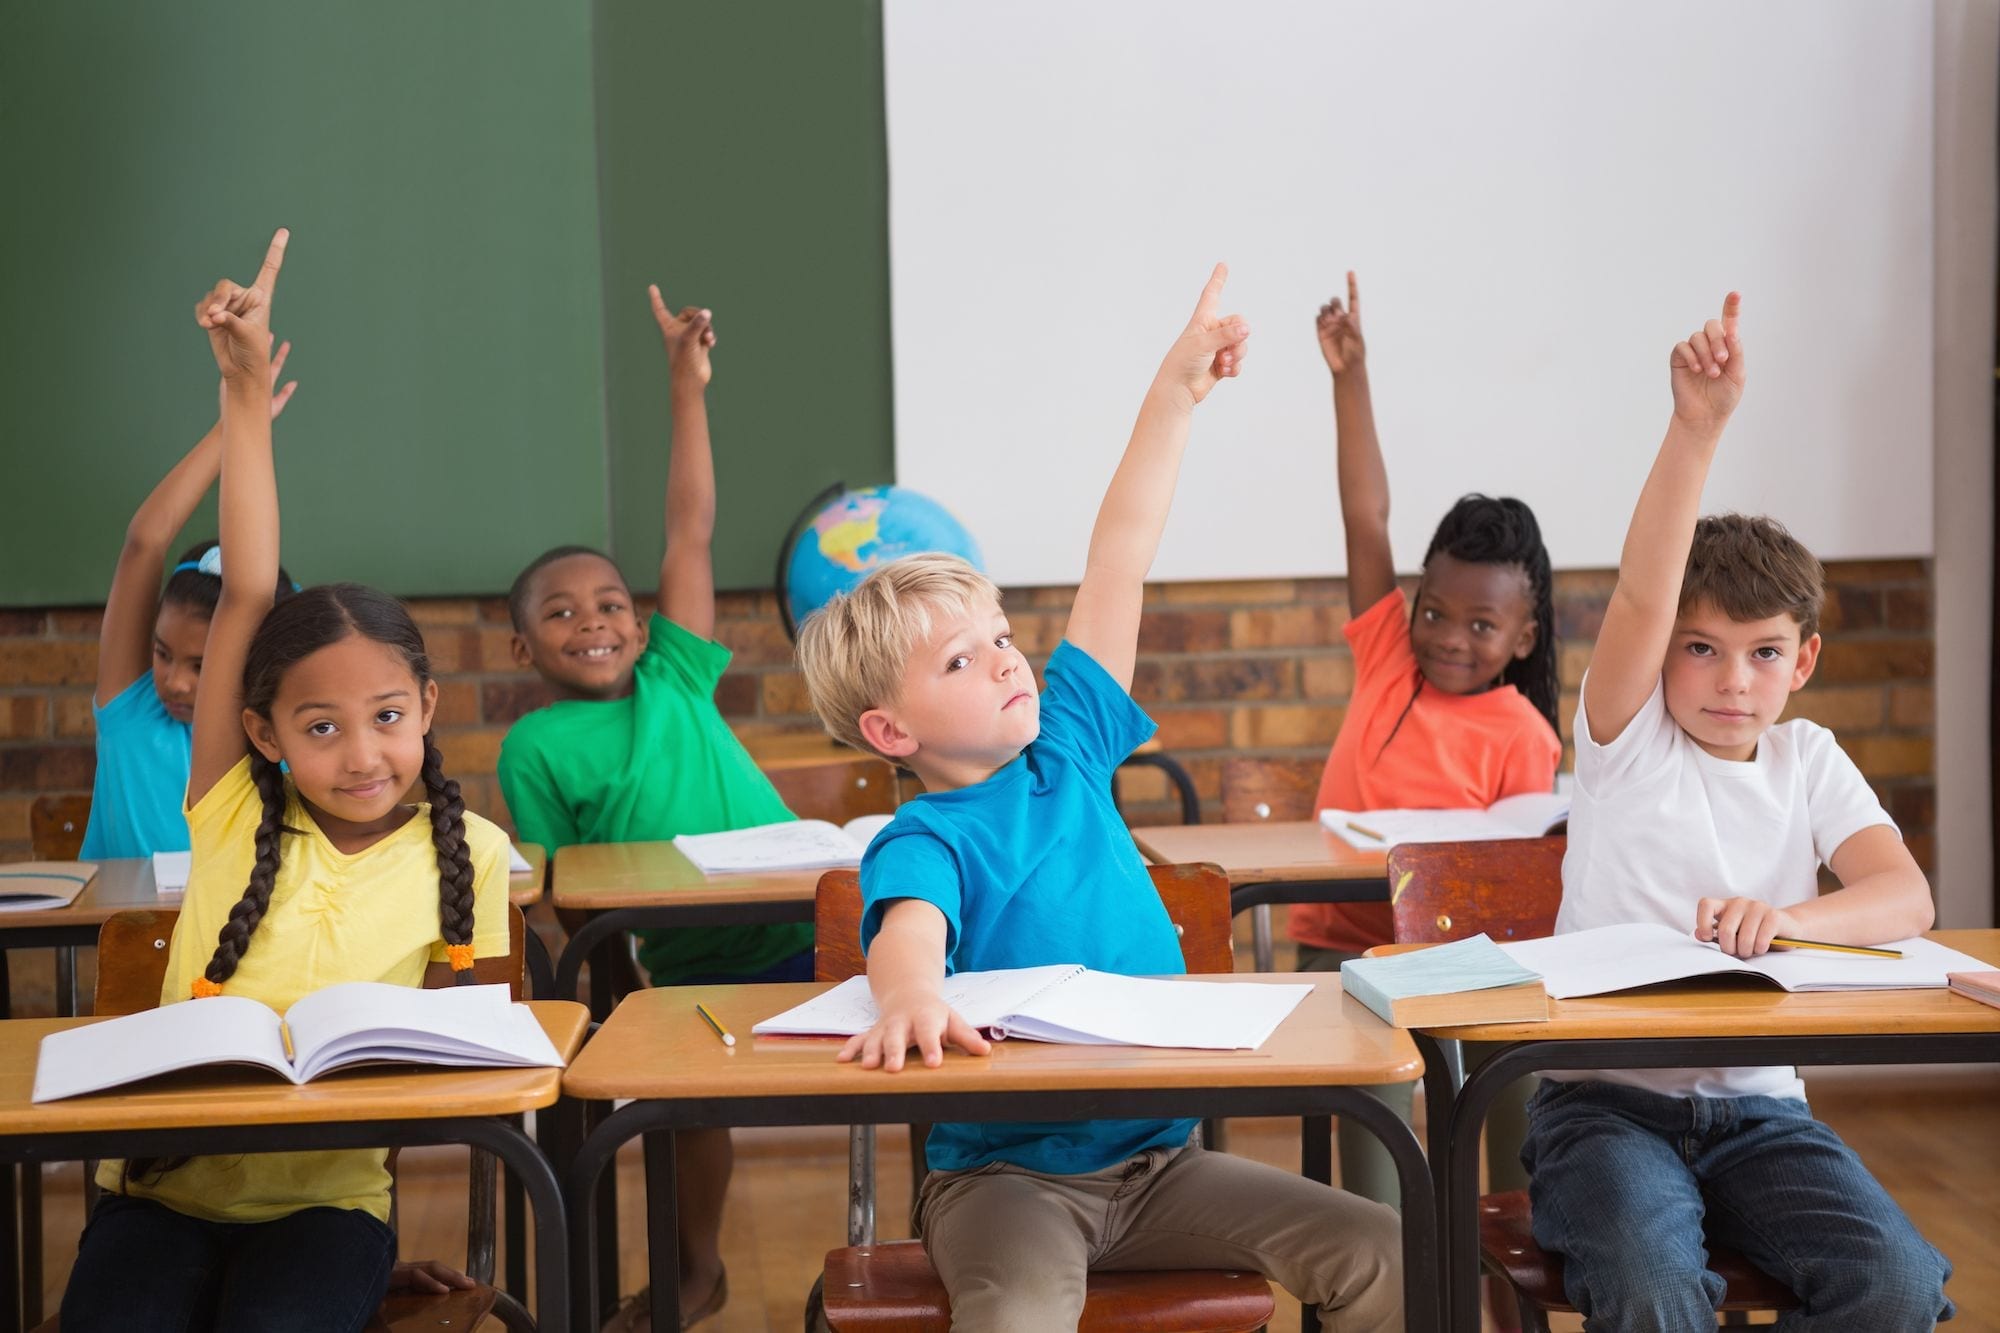 Kids in class raising their hands